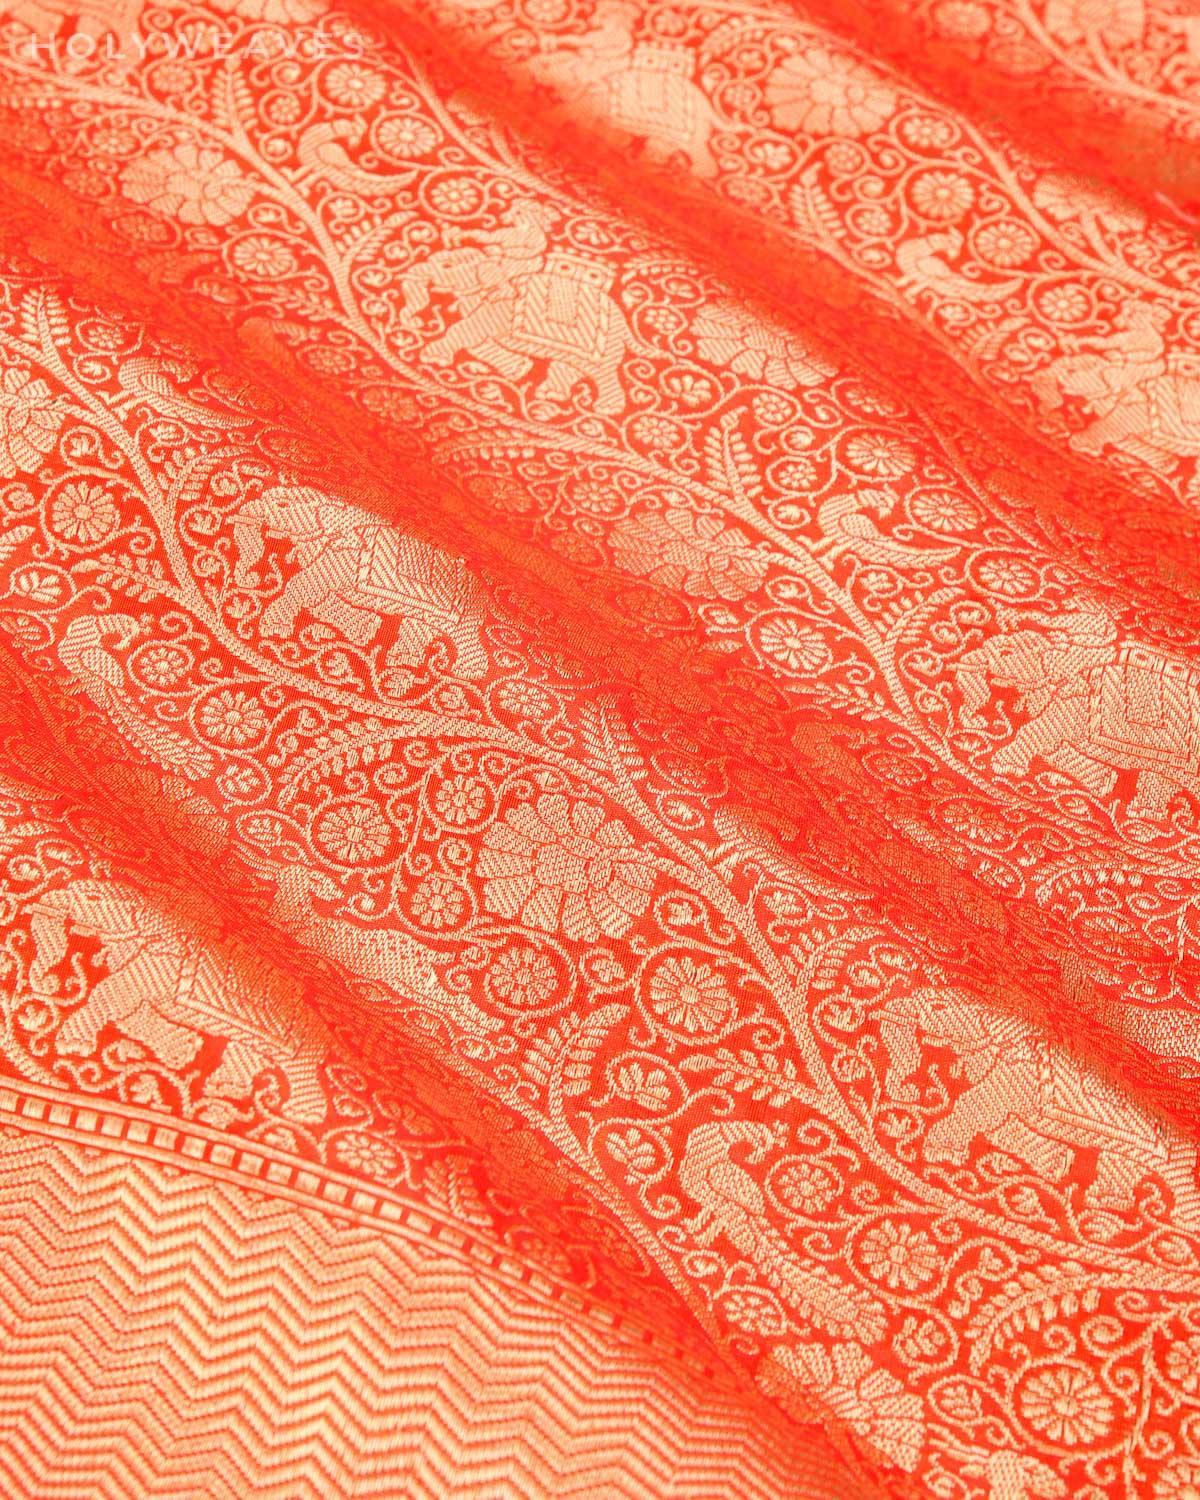 Shot Red Orange Banarasi Shikargah Brocade Handwoven Katan Silk Dupatta - By HolyWeaves, Benares